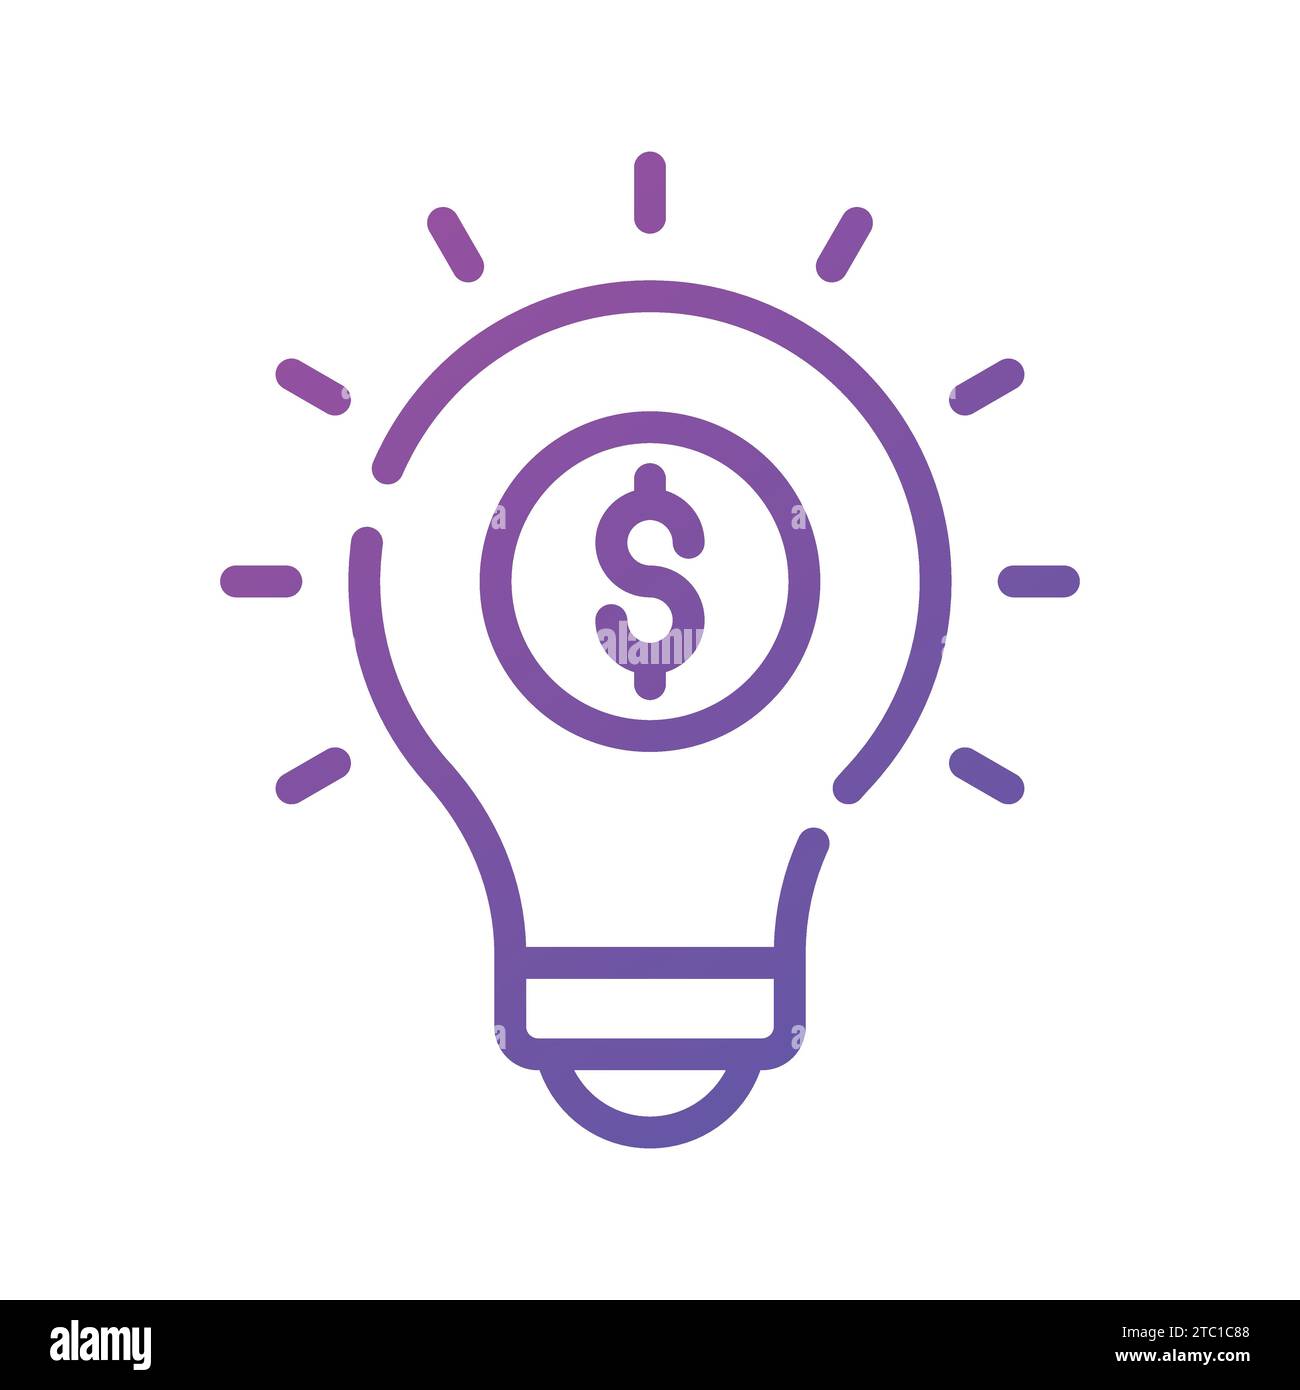 Lampadina Dollar Inside che raffigura un'idea innovativa, un'idea finanziaria dal design iconico. Illustrazione Vettoriale